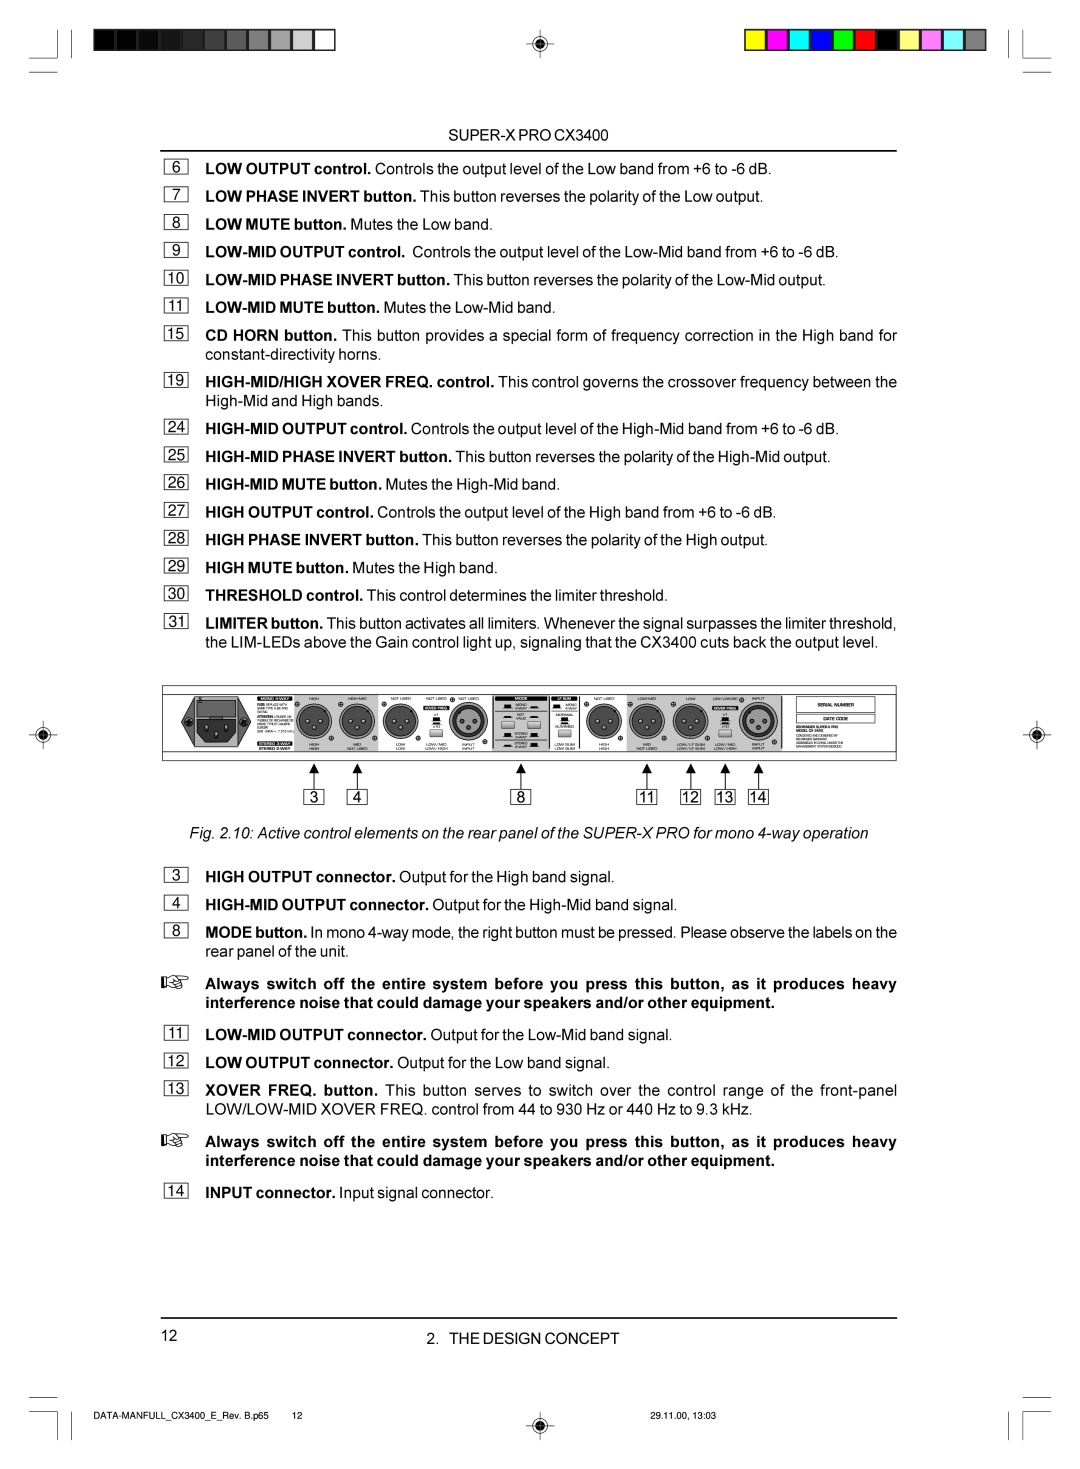 Behringer manual 6 7 8, 24 25 26 27, DATA-MANFULL CX3400 E Rev.B.p65, 29.11.00 